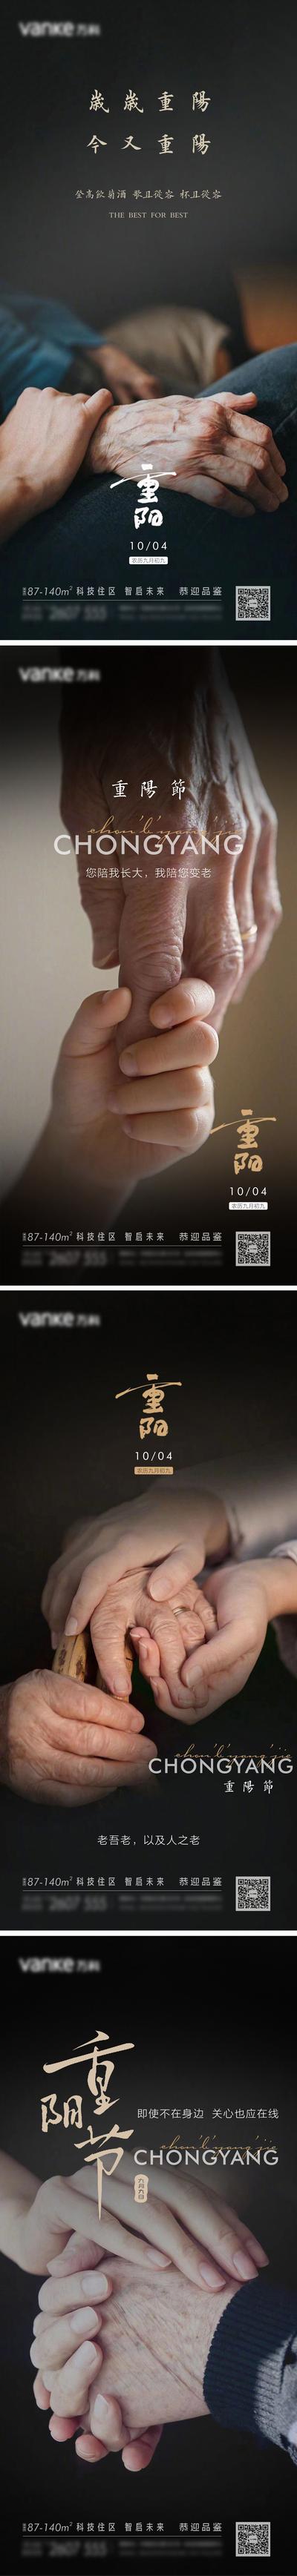 南门网 海报 房地产 中国传统节日 九九 重阳节 老人 牵手 系列